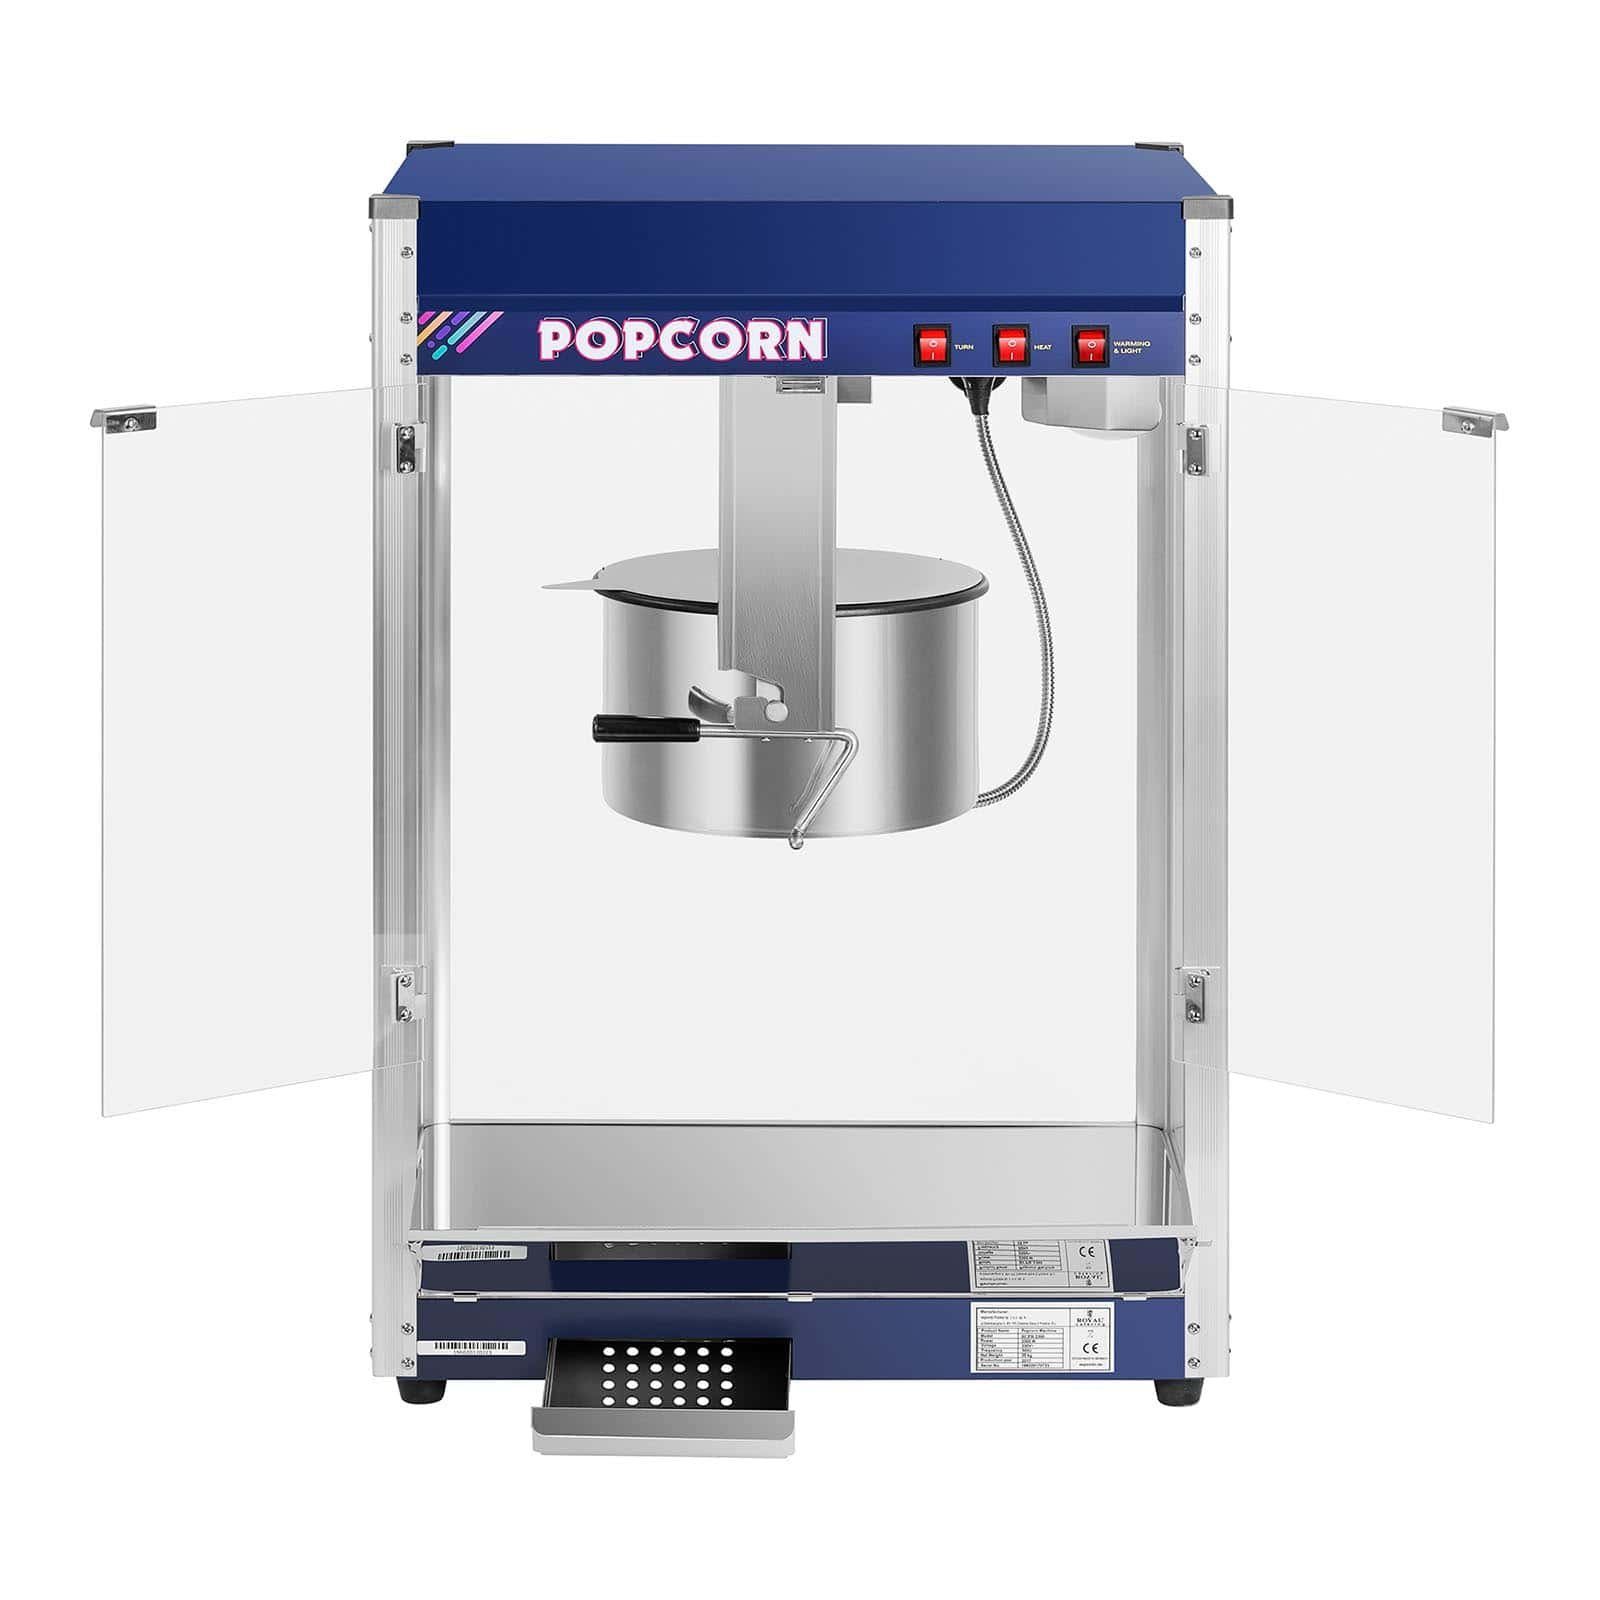 Royal Catering Popcornmaschine Maschine Popcornmaker Popcornmaschine Popcornautomat Popcorn Maker